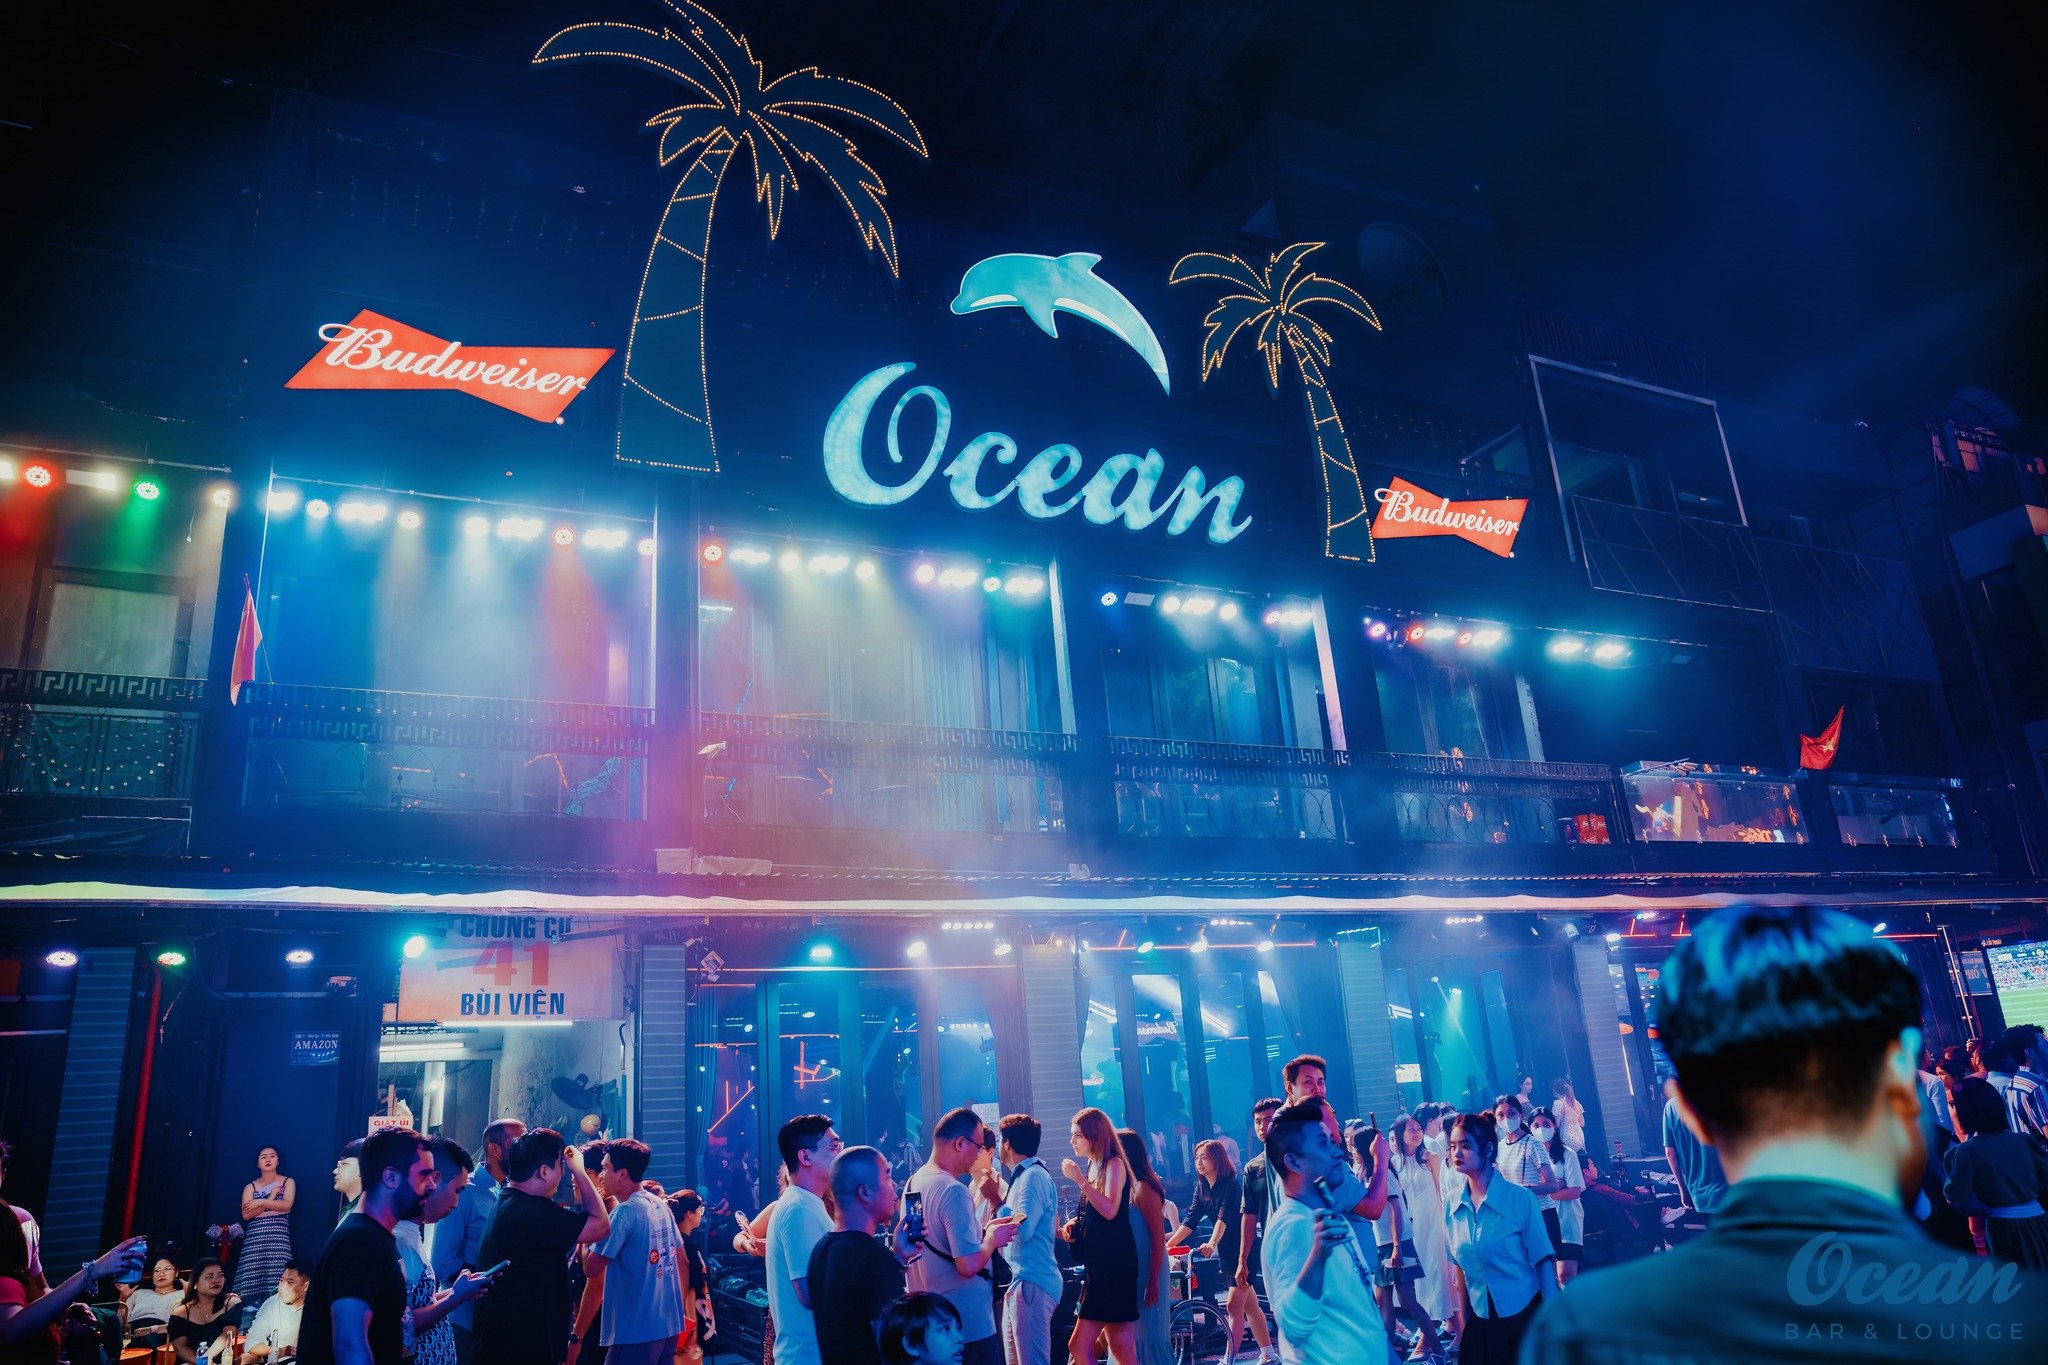 Ocean Bar & Lounge - 45 Bùi Viện - TP. Hồ Chí Minh – 9Life.com.vn